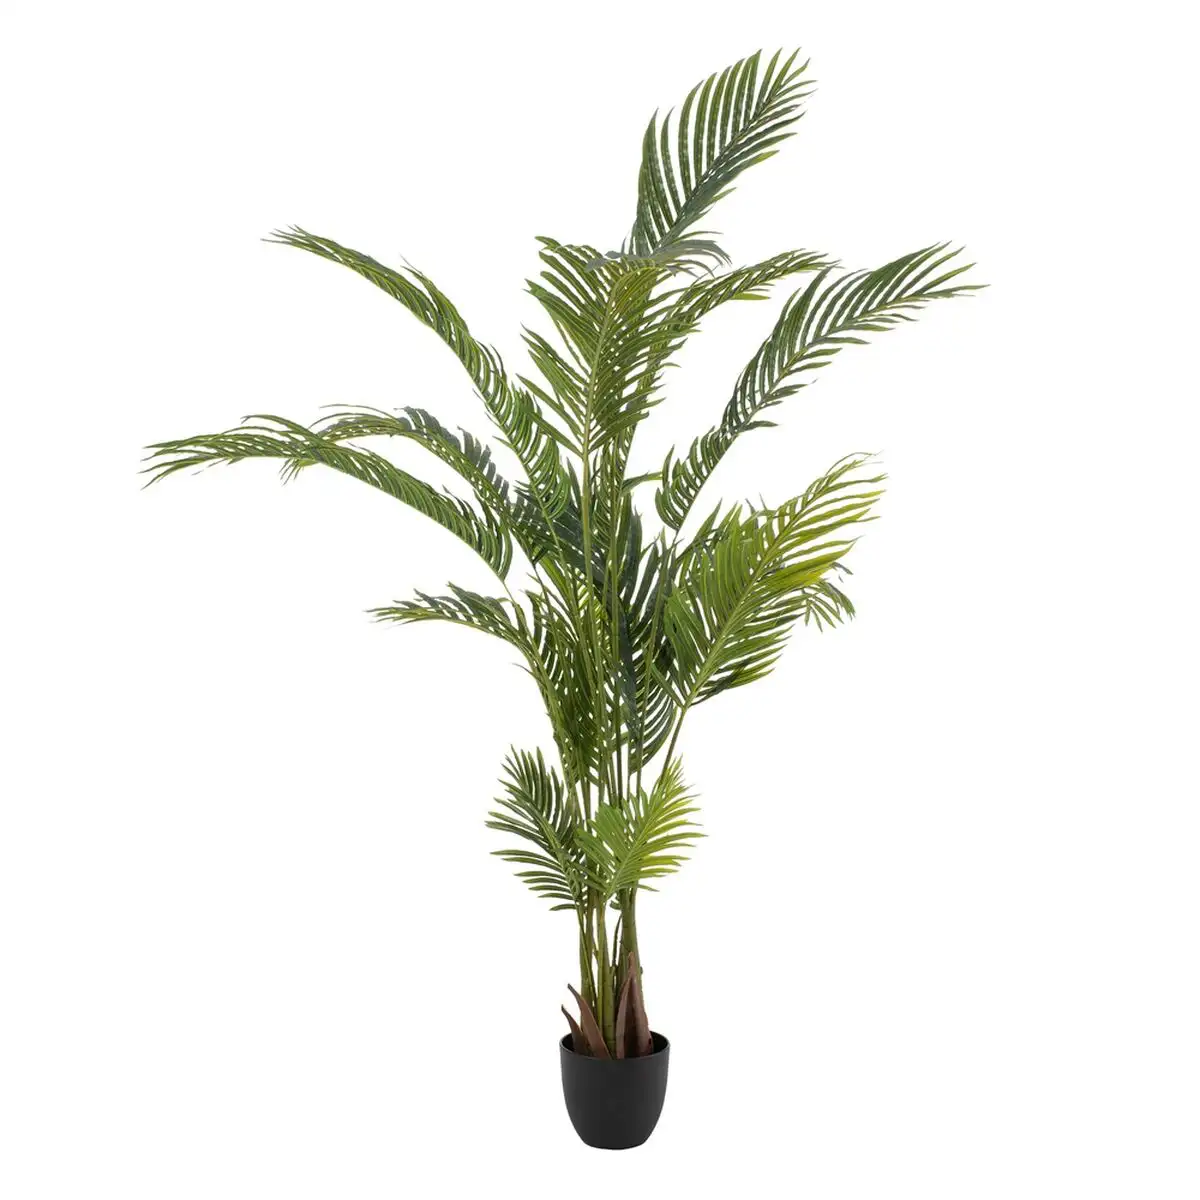 Plante decorative polyethylene palmier 110 x 110 x 170 cm_2500. DIAYTAR SENEGAL - Votre Source de Découvertes Shopping. Découvrez des trésors dans notre boutique en ligne, allant des articles artisanaux aux innovations modernes.